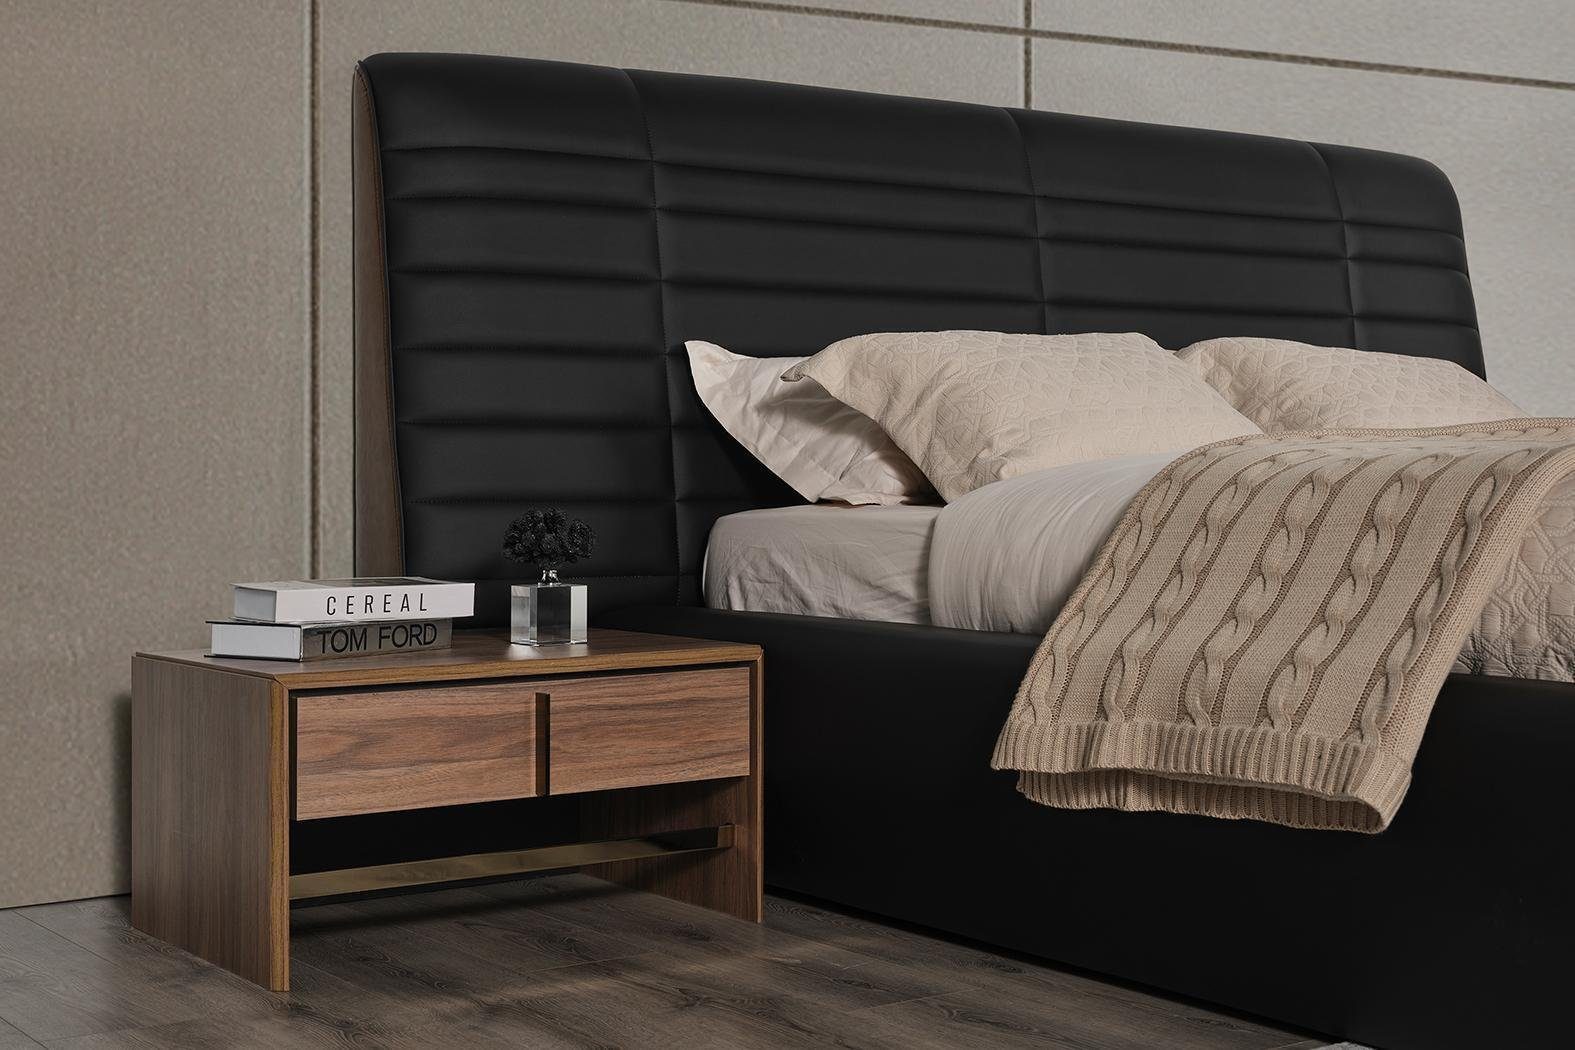 Bett JVmoebel Nachttische Made Schlafzimmer-Set Luxus neu In 3tlg Europe Design, schwarz 2x Schlafzimmer Set